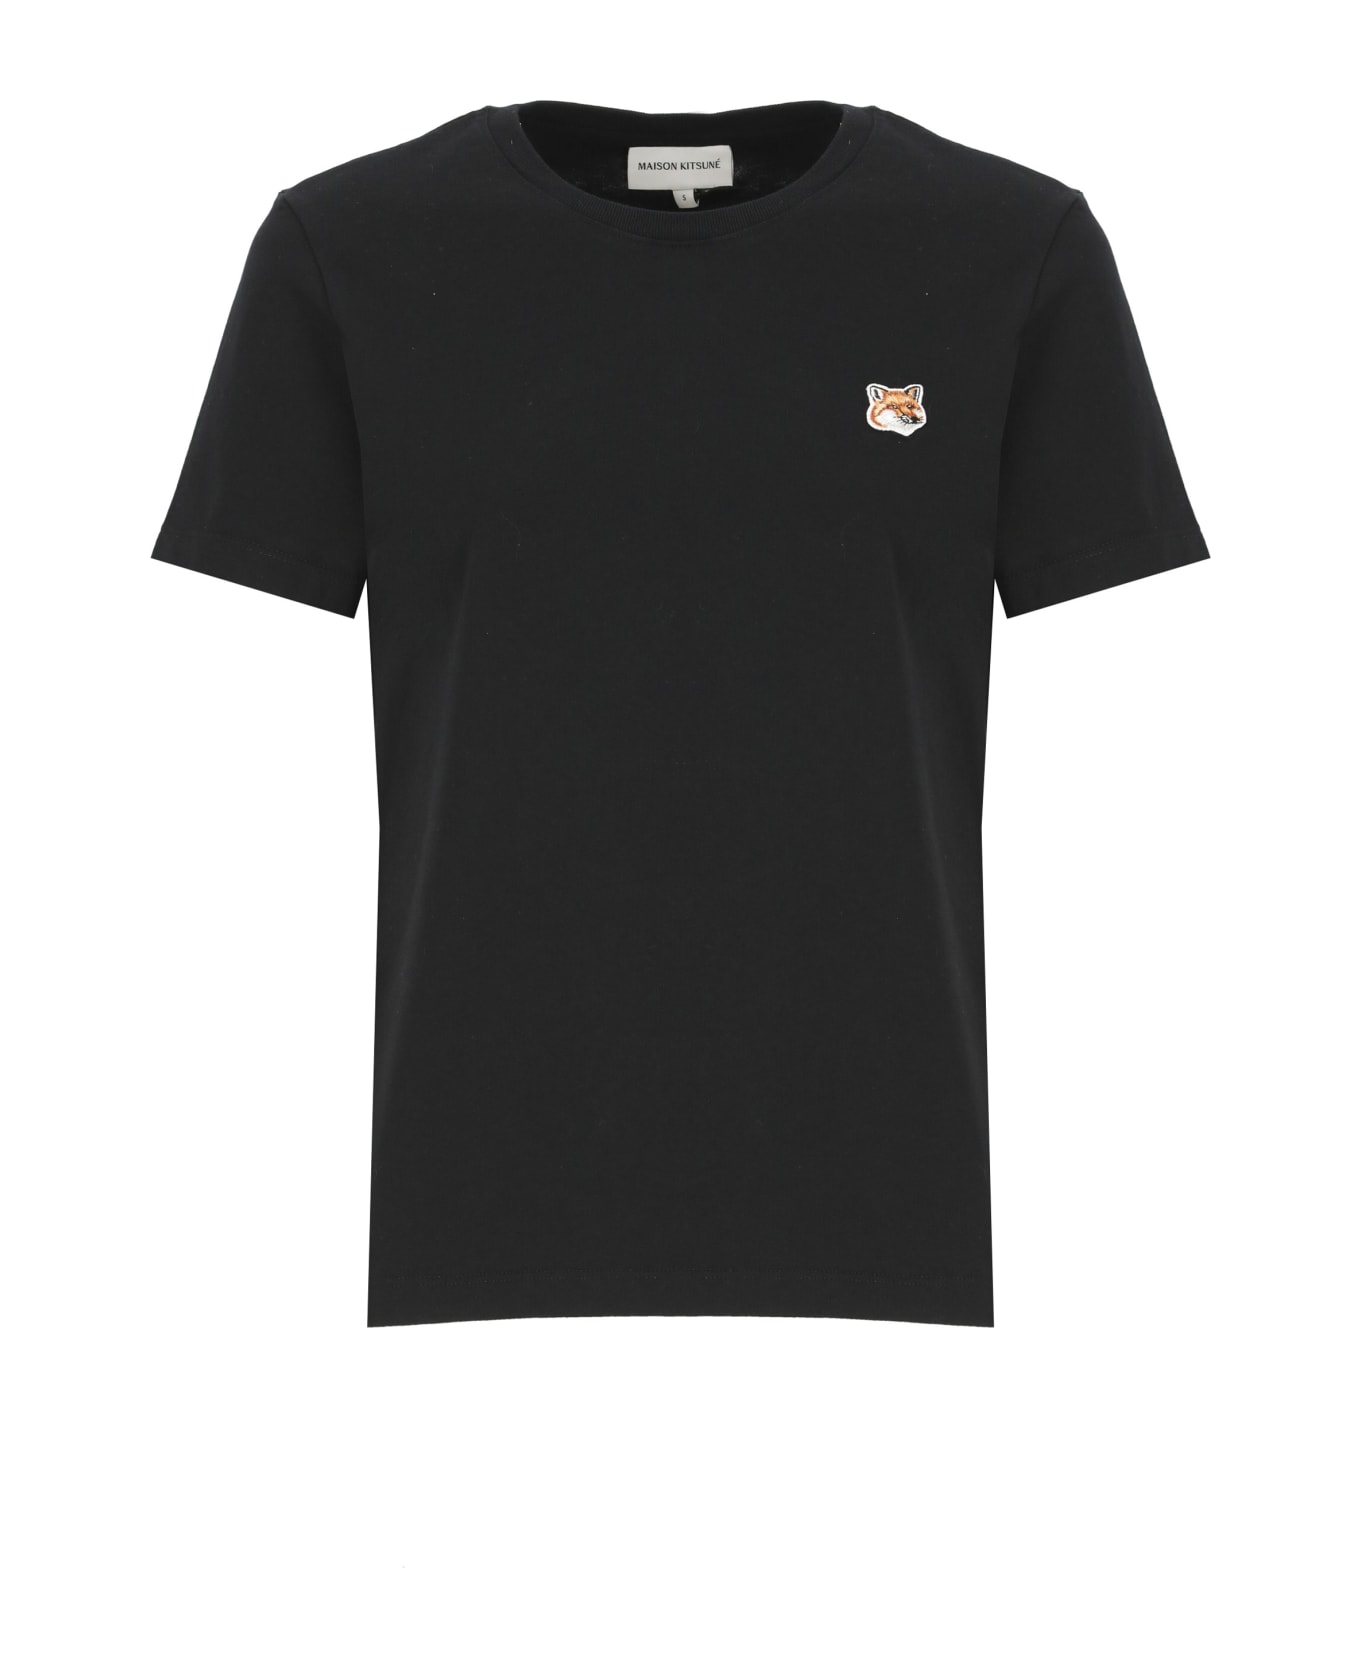 Maison Kitsuné T-shirt With Logo - Black